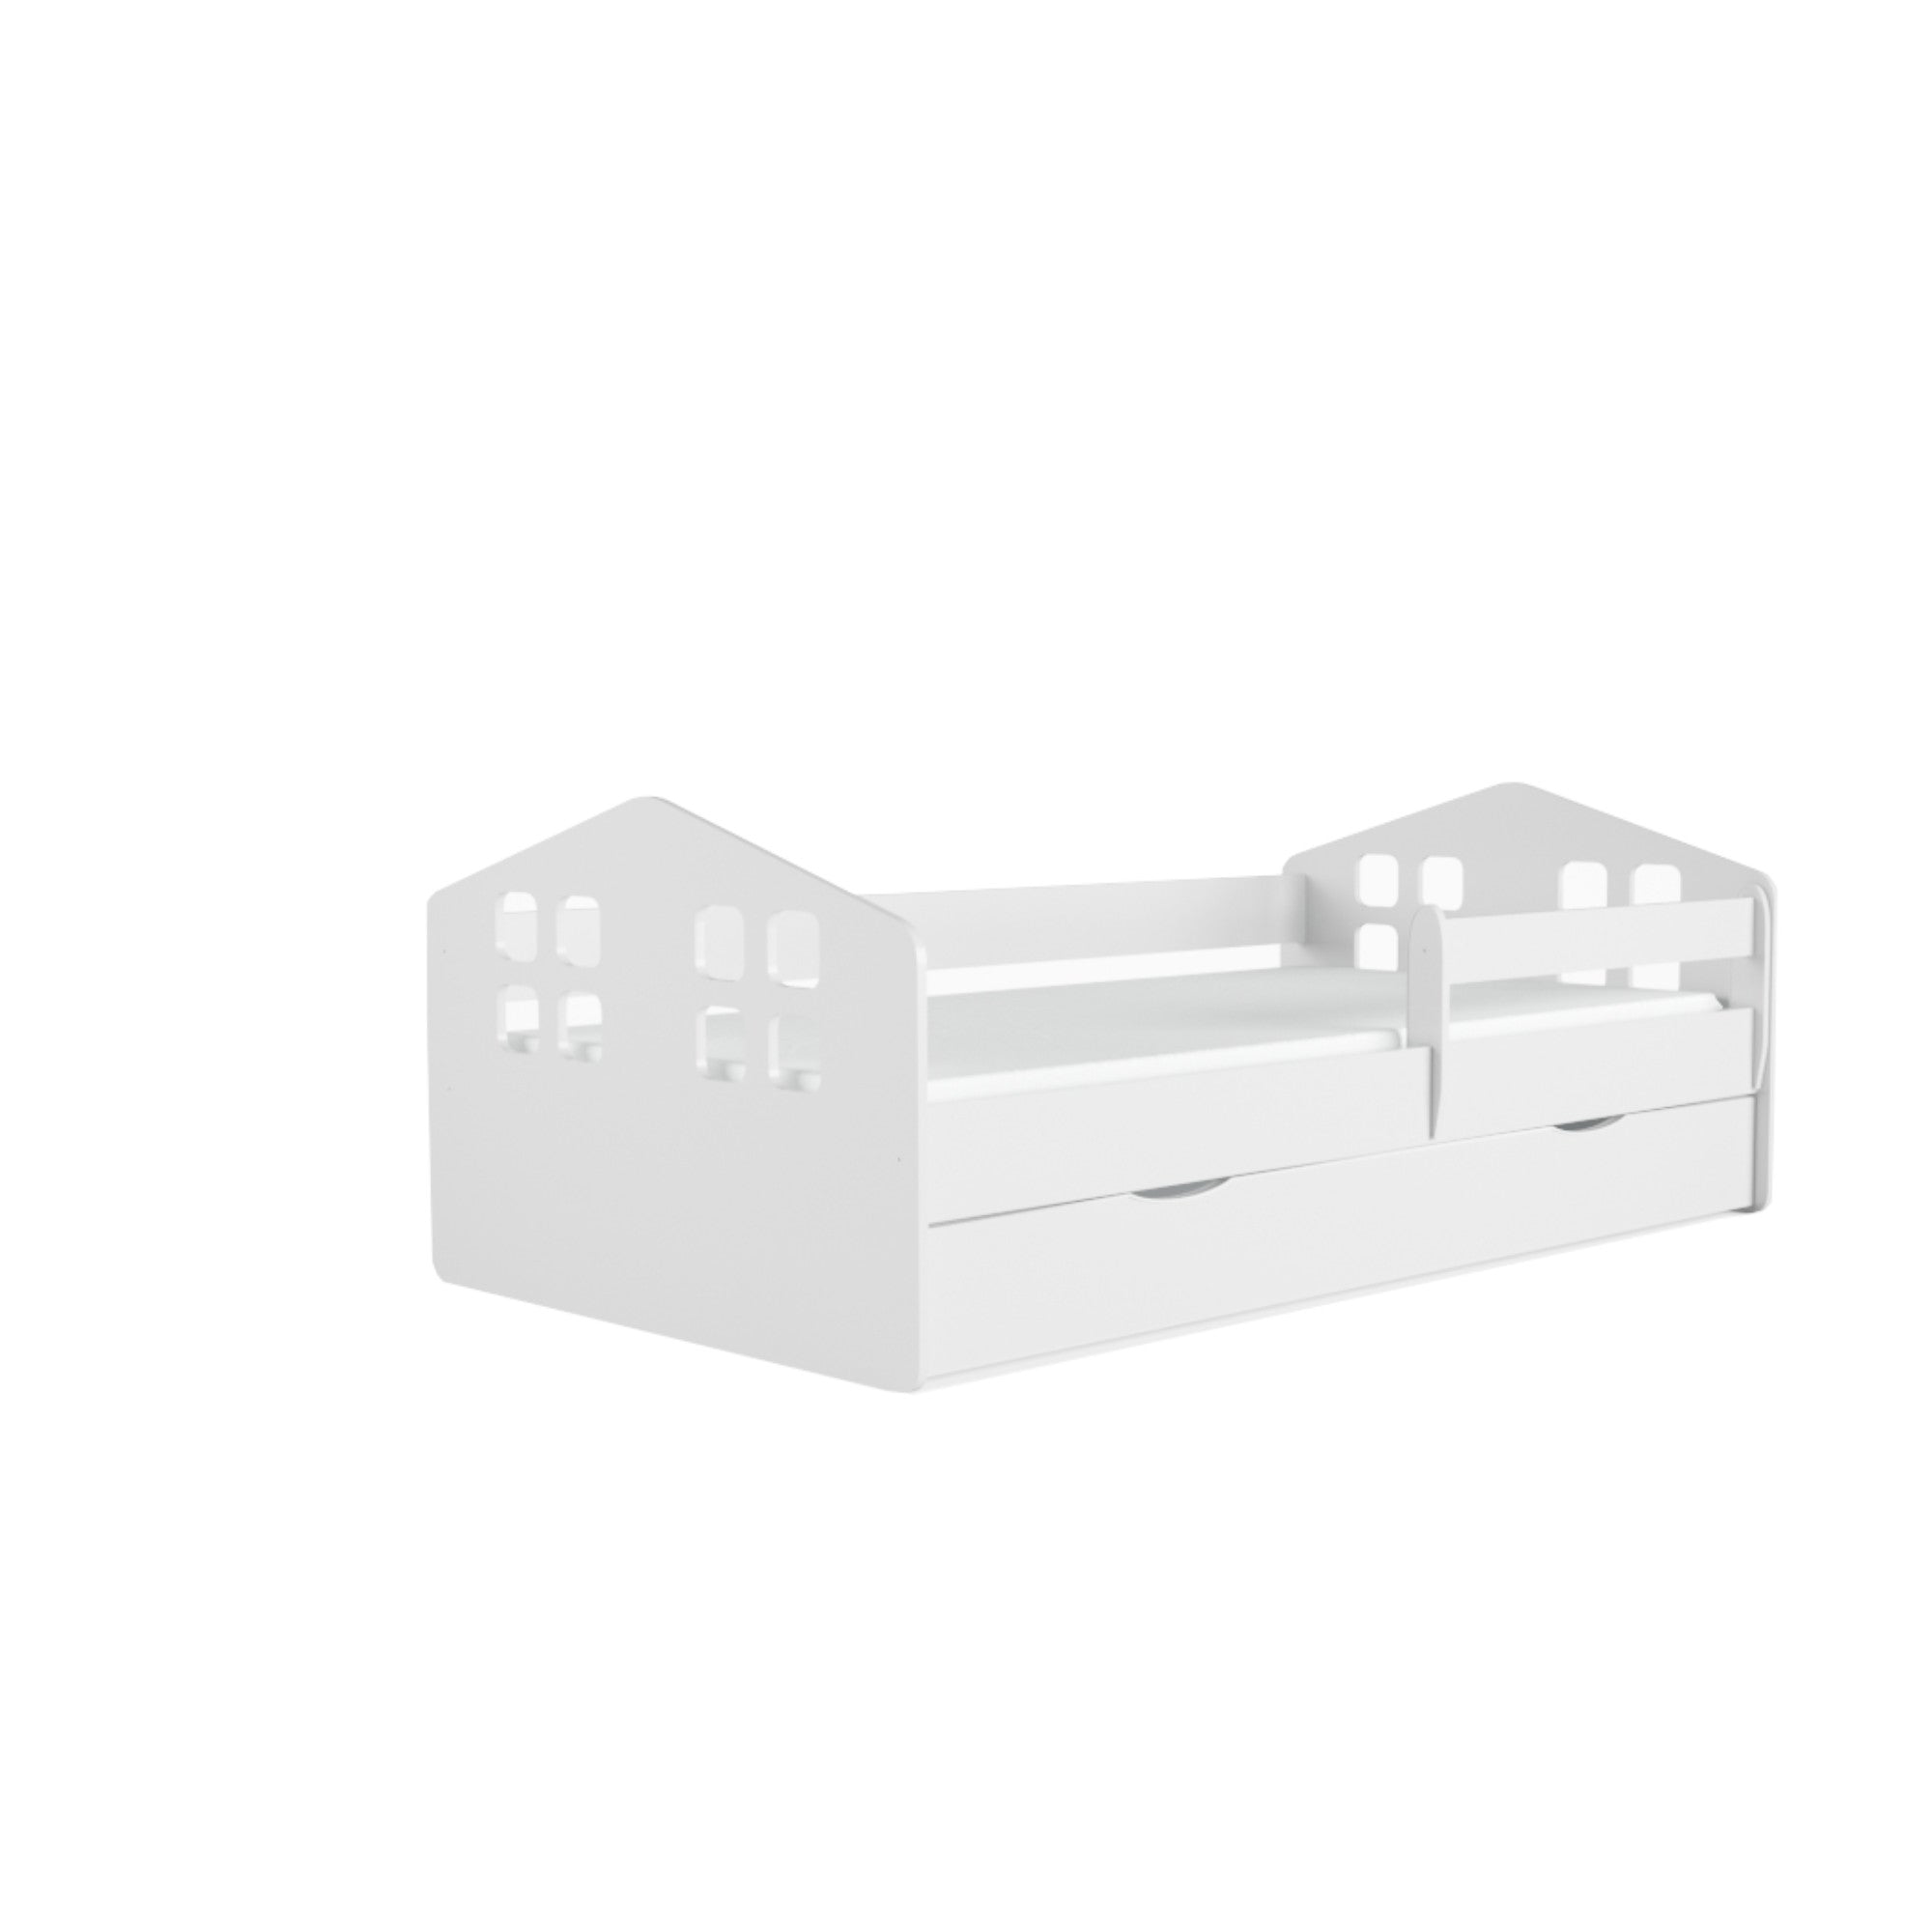 Kinderbett Mika inkl. Rollrost + Matratze + Bettschublade in weiß 80*140, 80*160 oder 80*180 cm